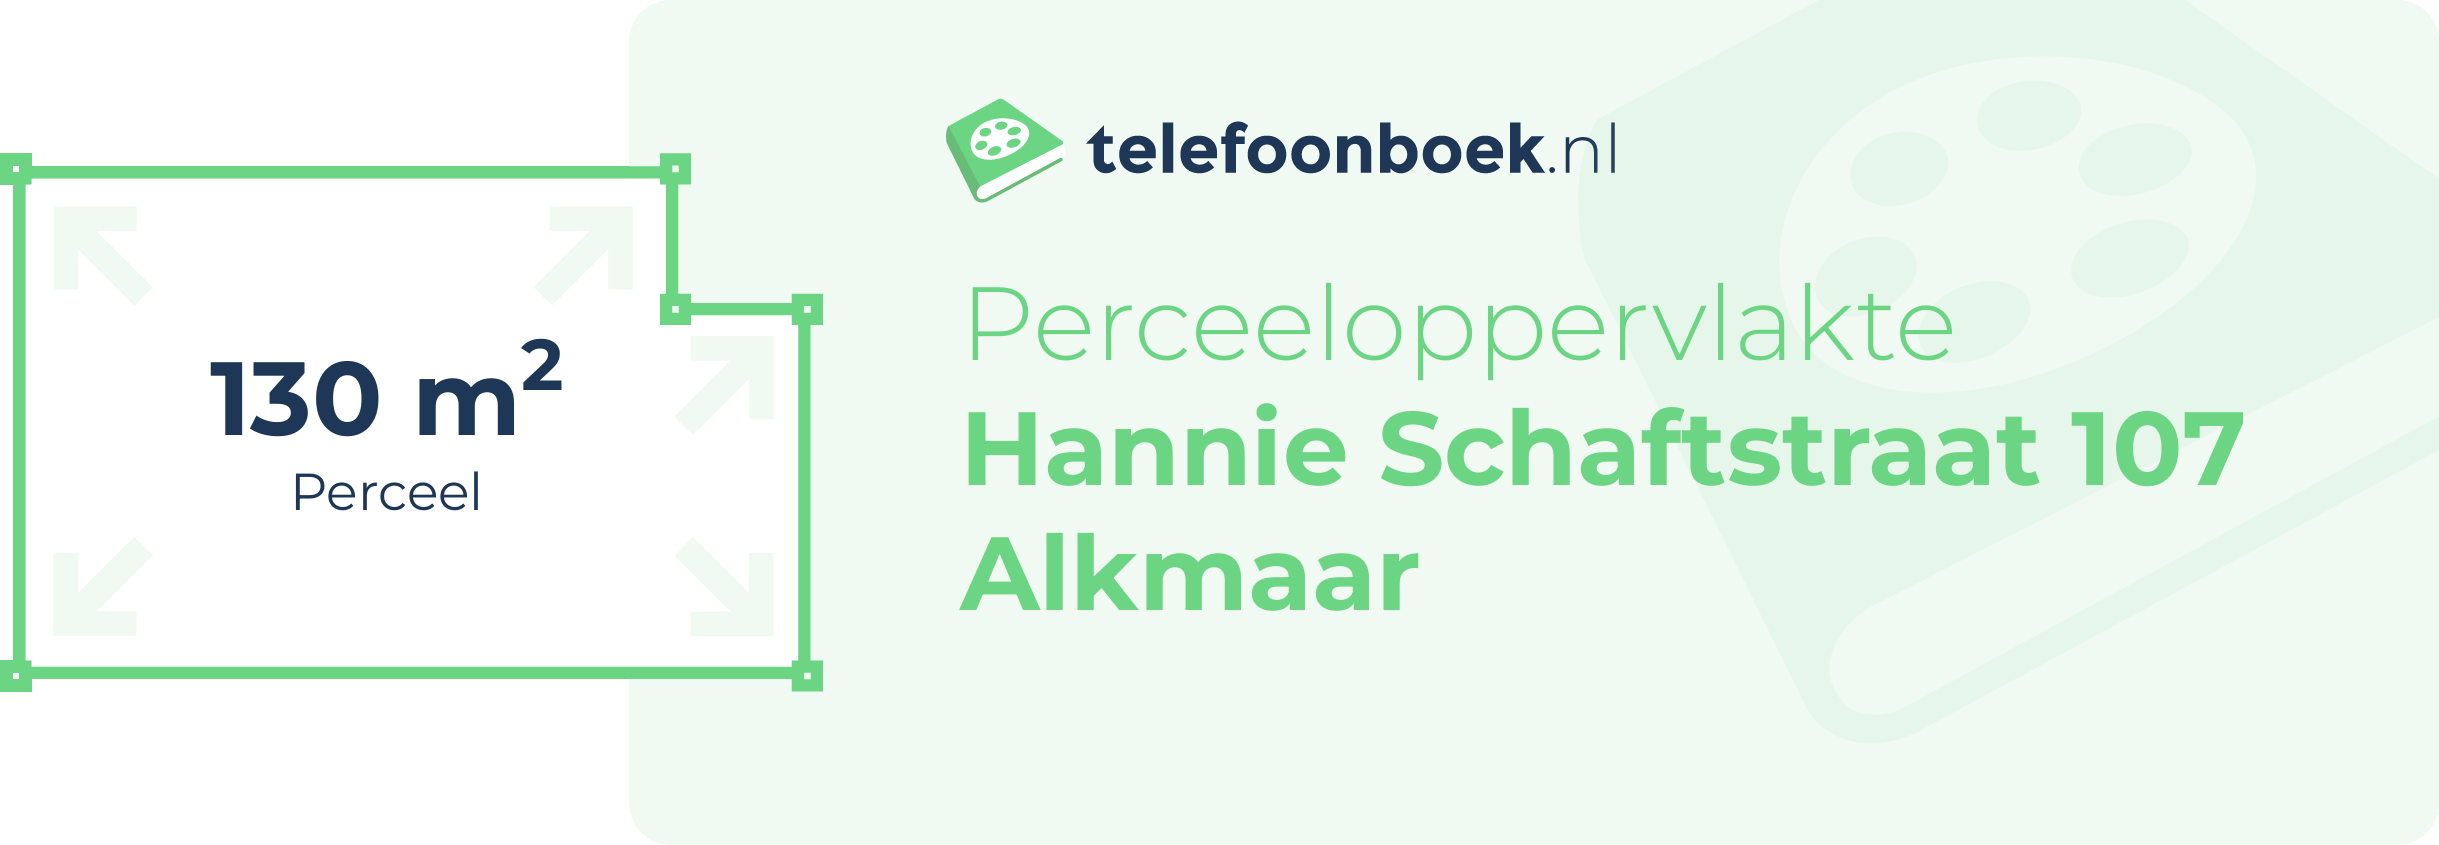 Perceeloppervlakte Hannie Schaftstraat 107 Alkmaar